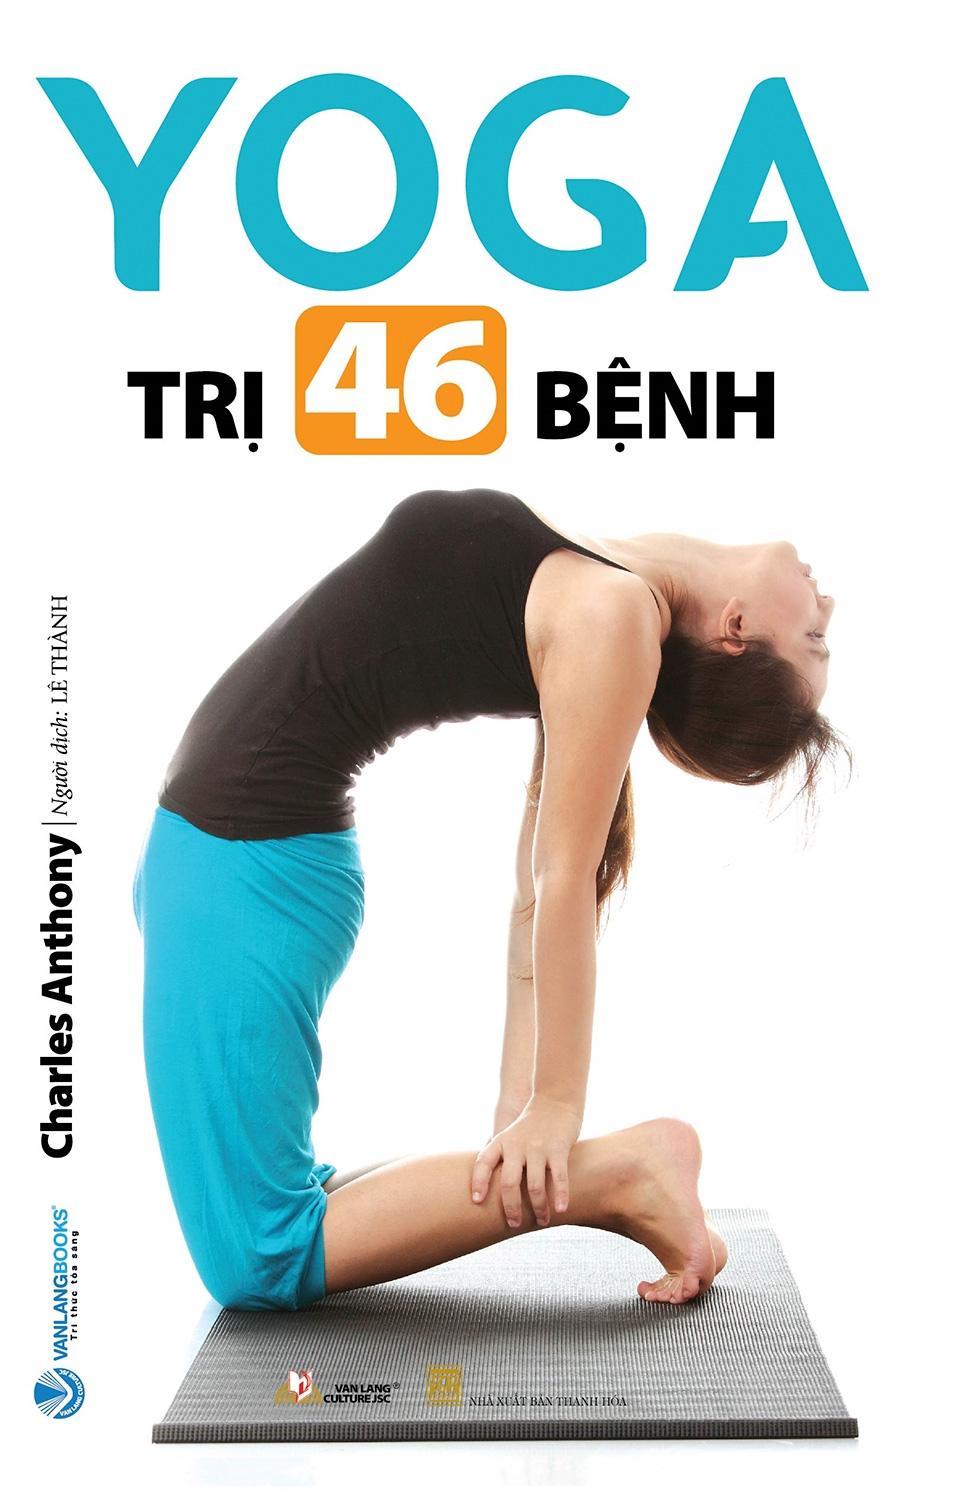 Yoga Trị 46 Bệnh (Tái Bản)